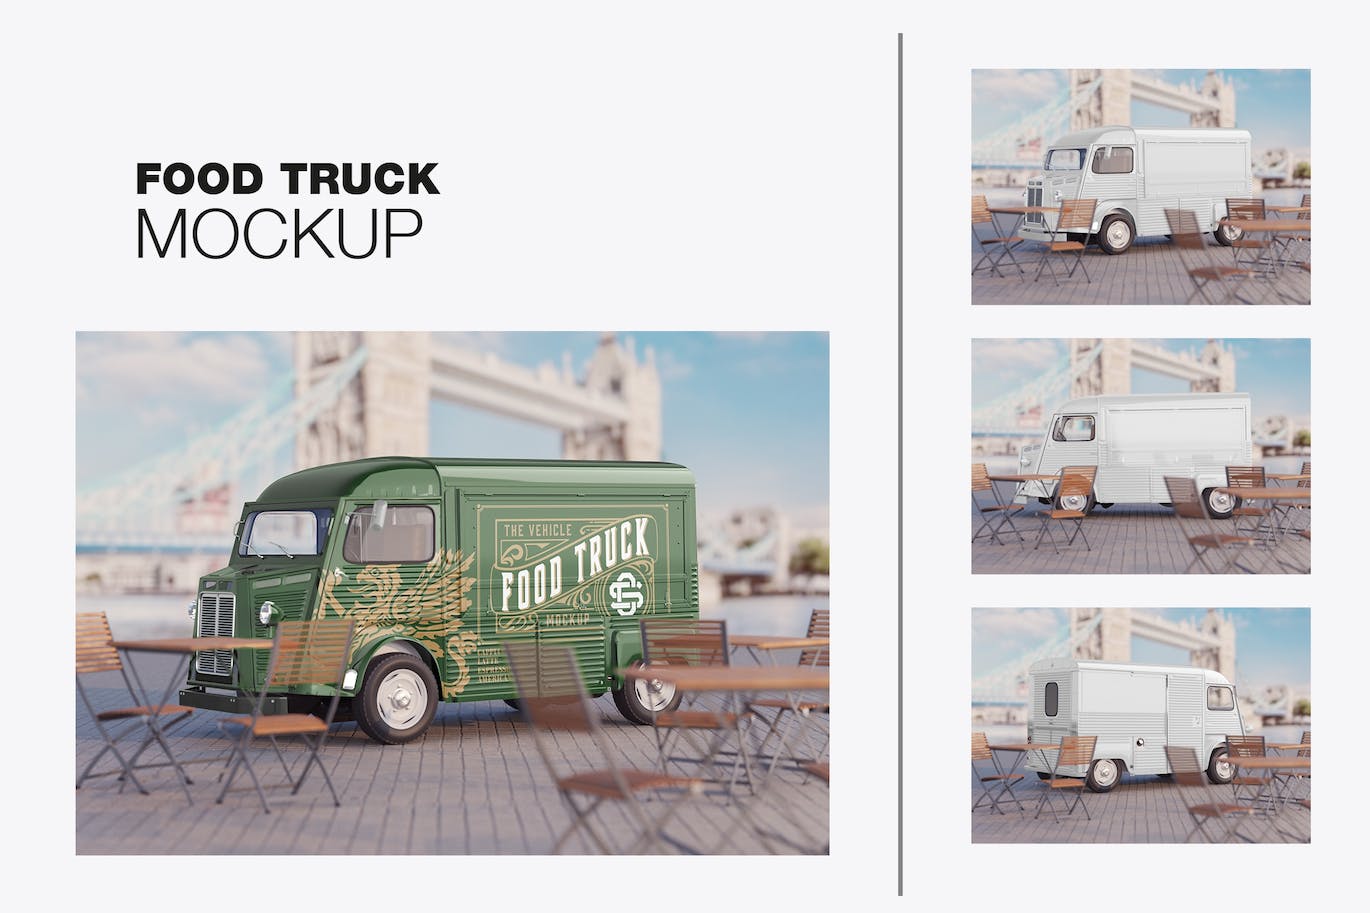 复古餐车广告场景样机图 Set Vintage Food Truck Scene Mockup 样机素材 第1张